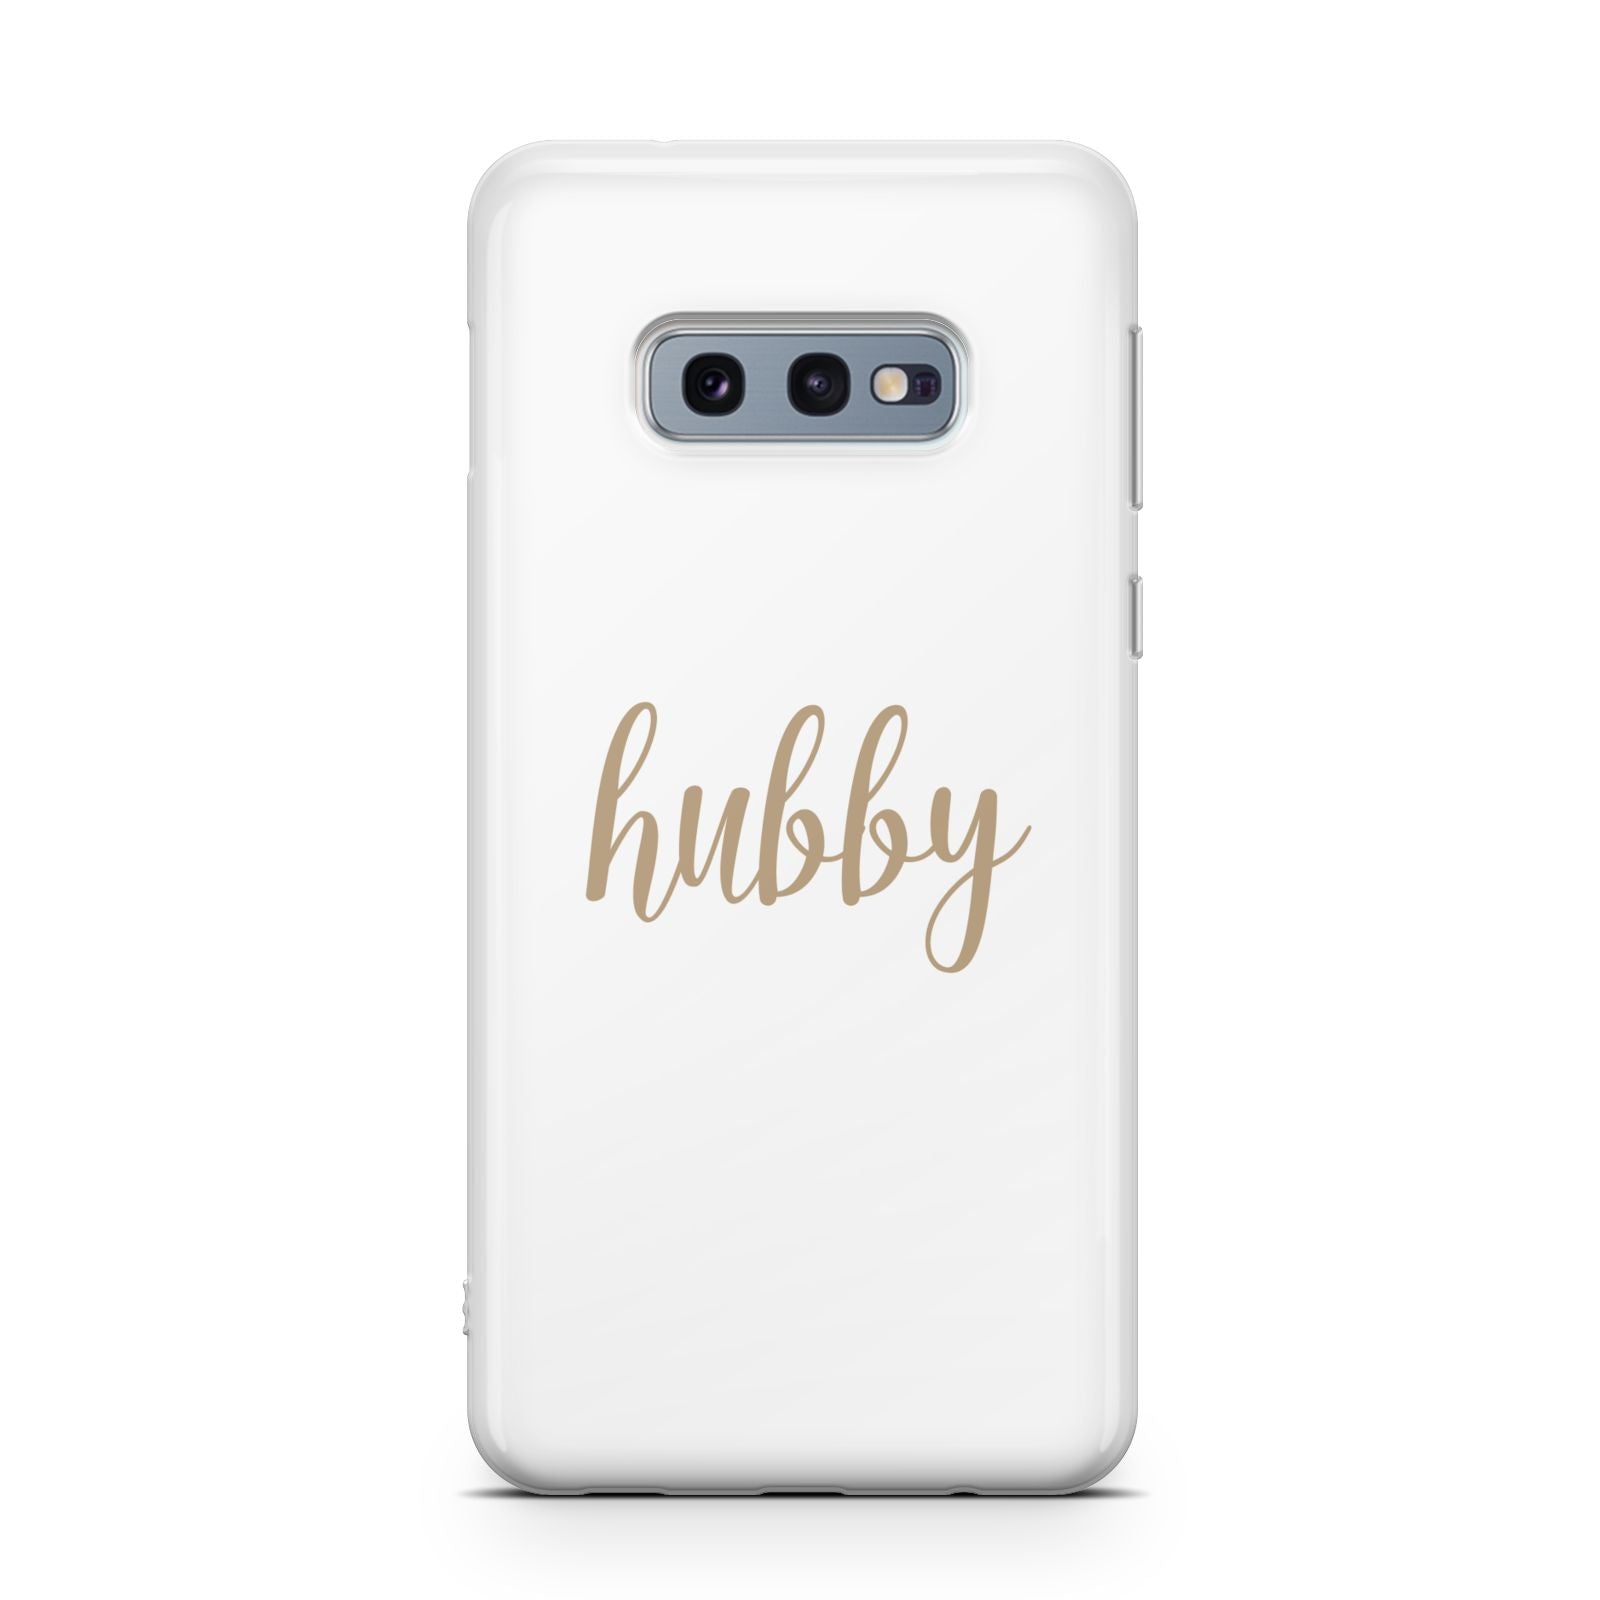 Hubby Samsung Galaxy S10E Case